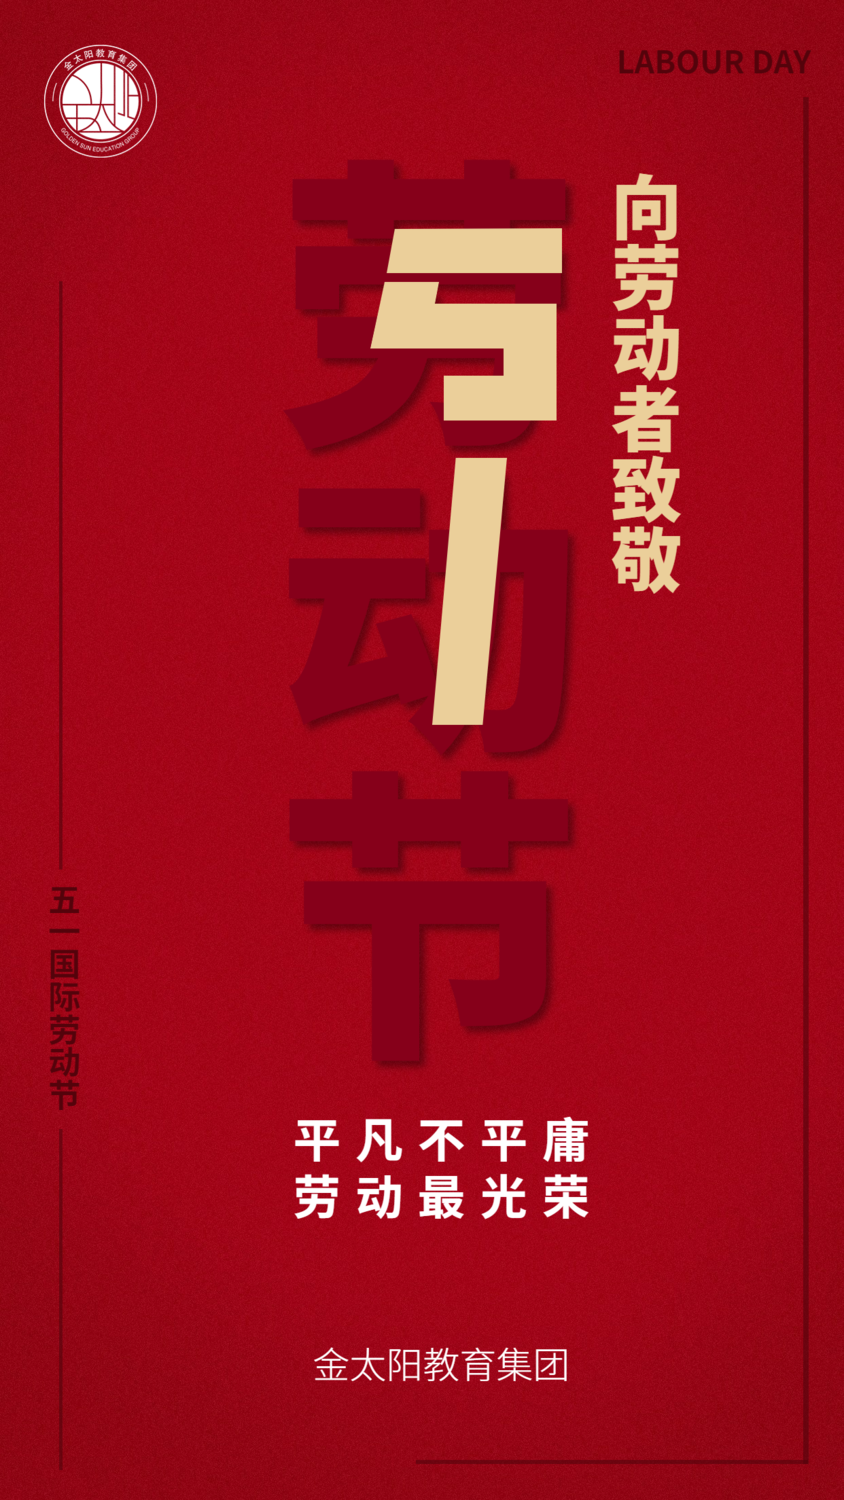 劳动节地产服务祝福中国风手机海报 (1).png